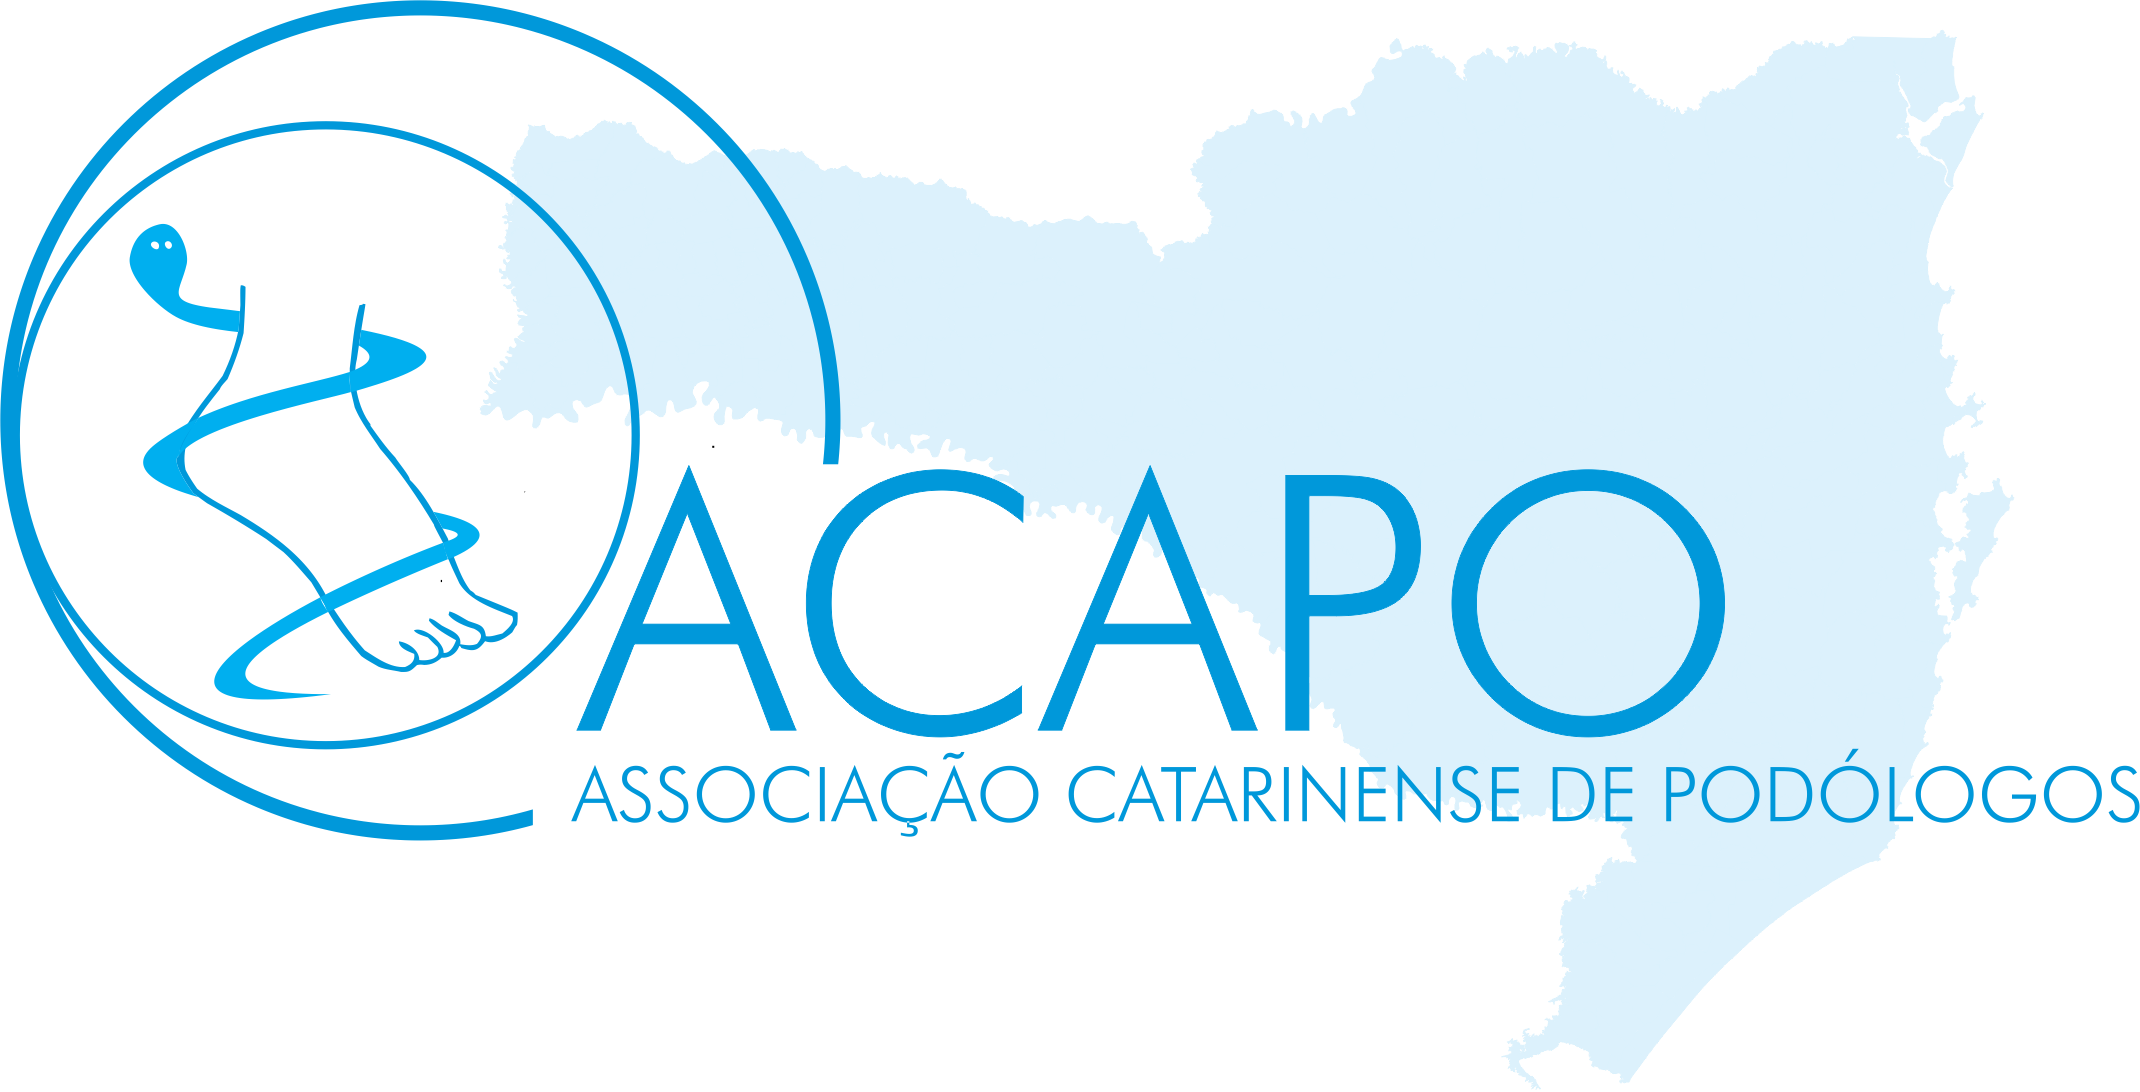 ACAPO - Associação Catarinense de Podólogos